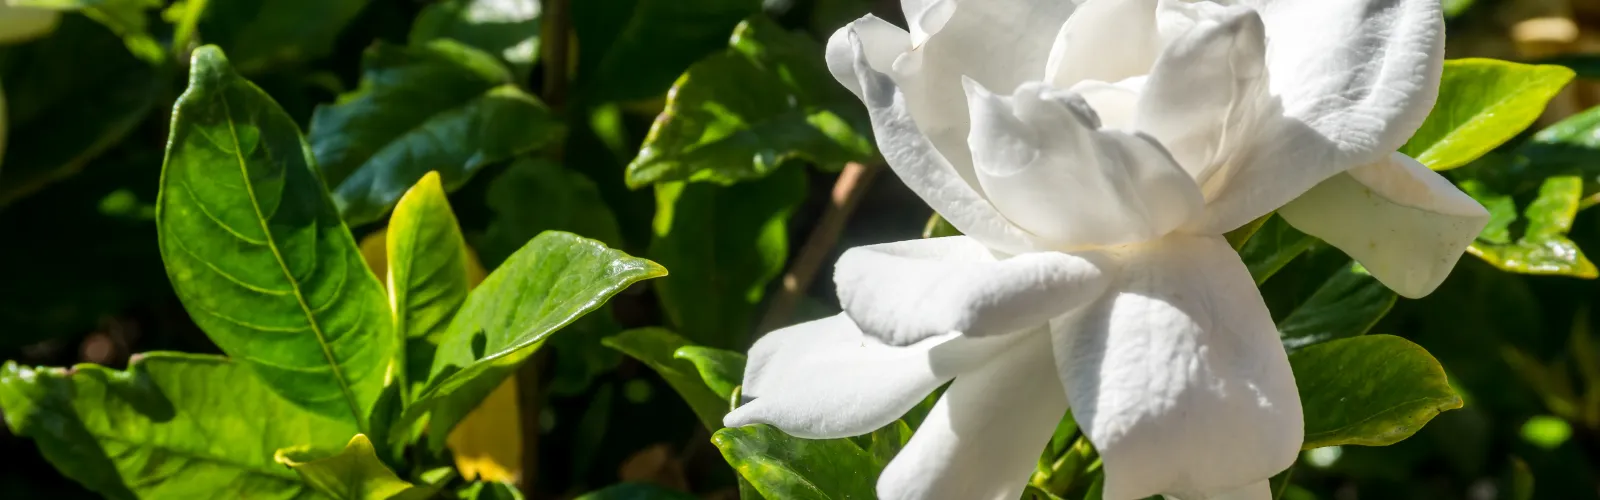 closeup of white gardenia flower on the shrub